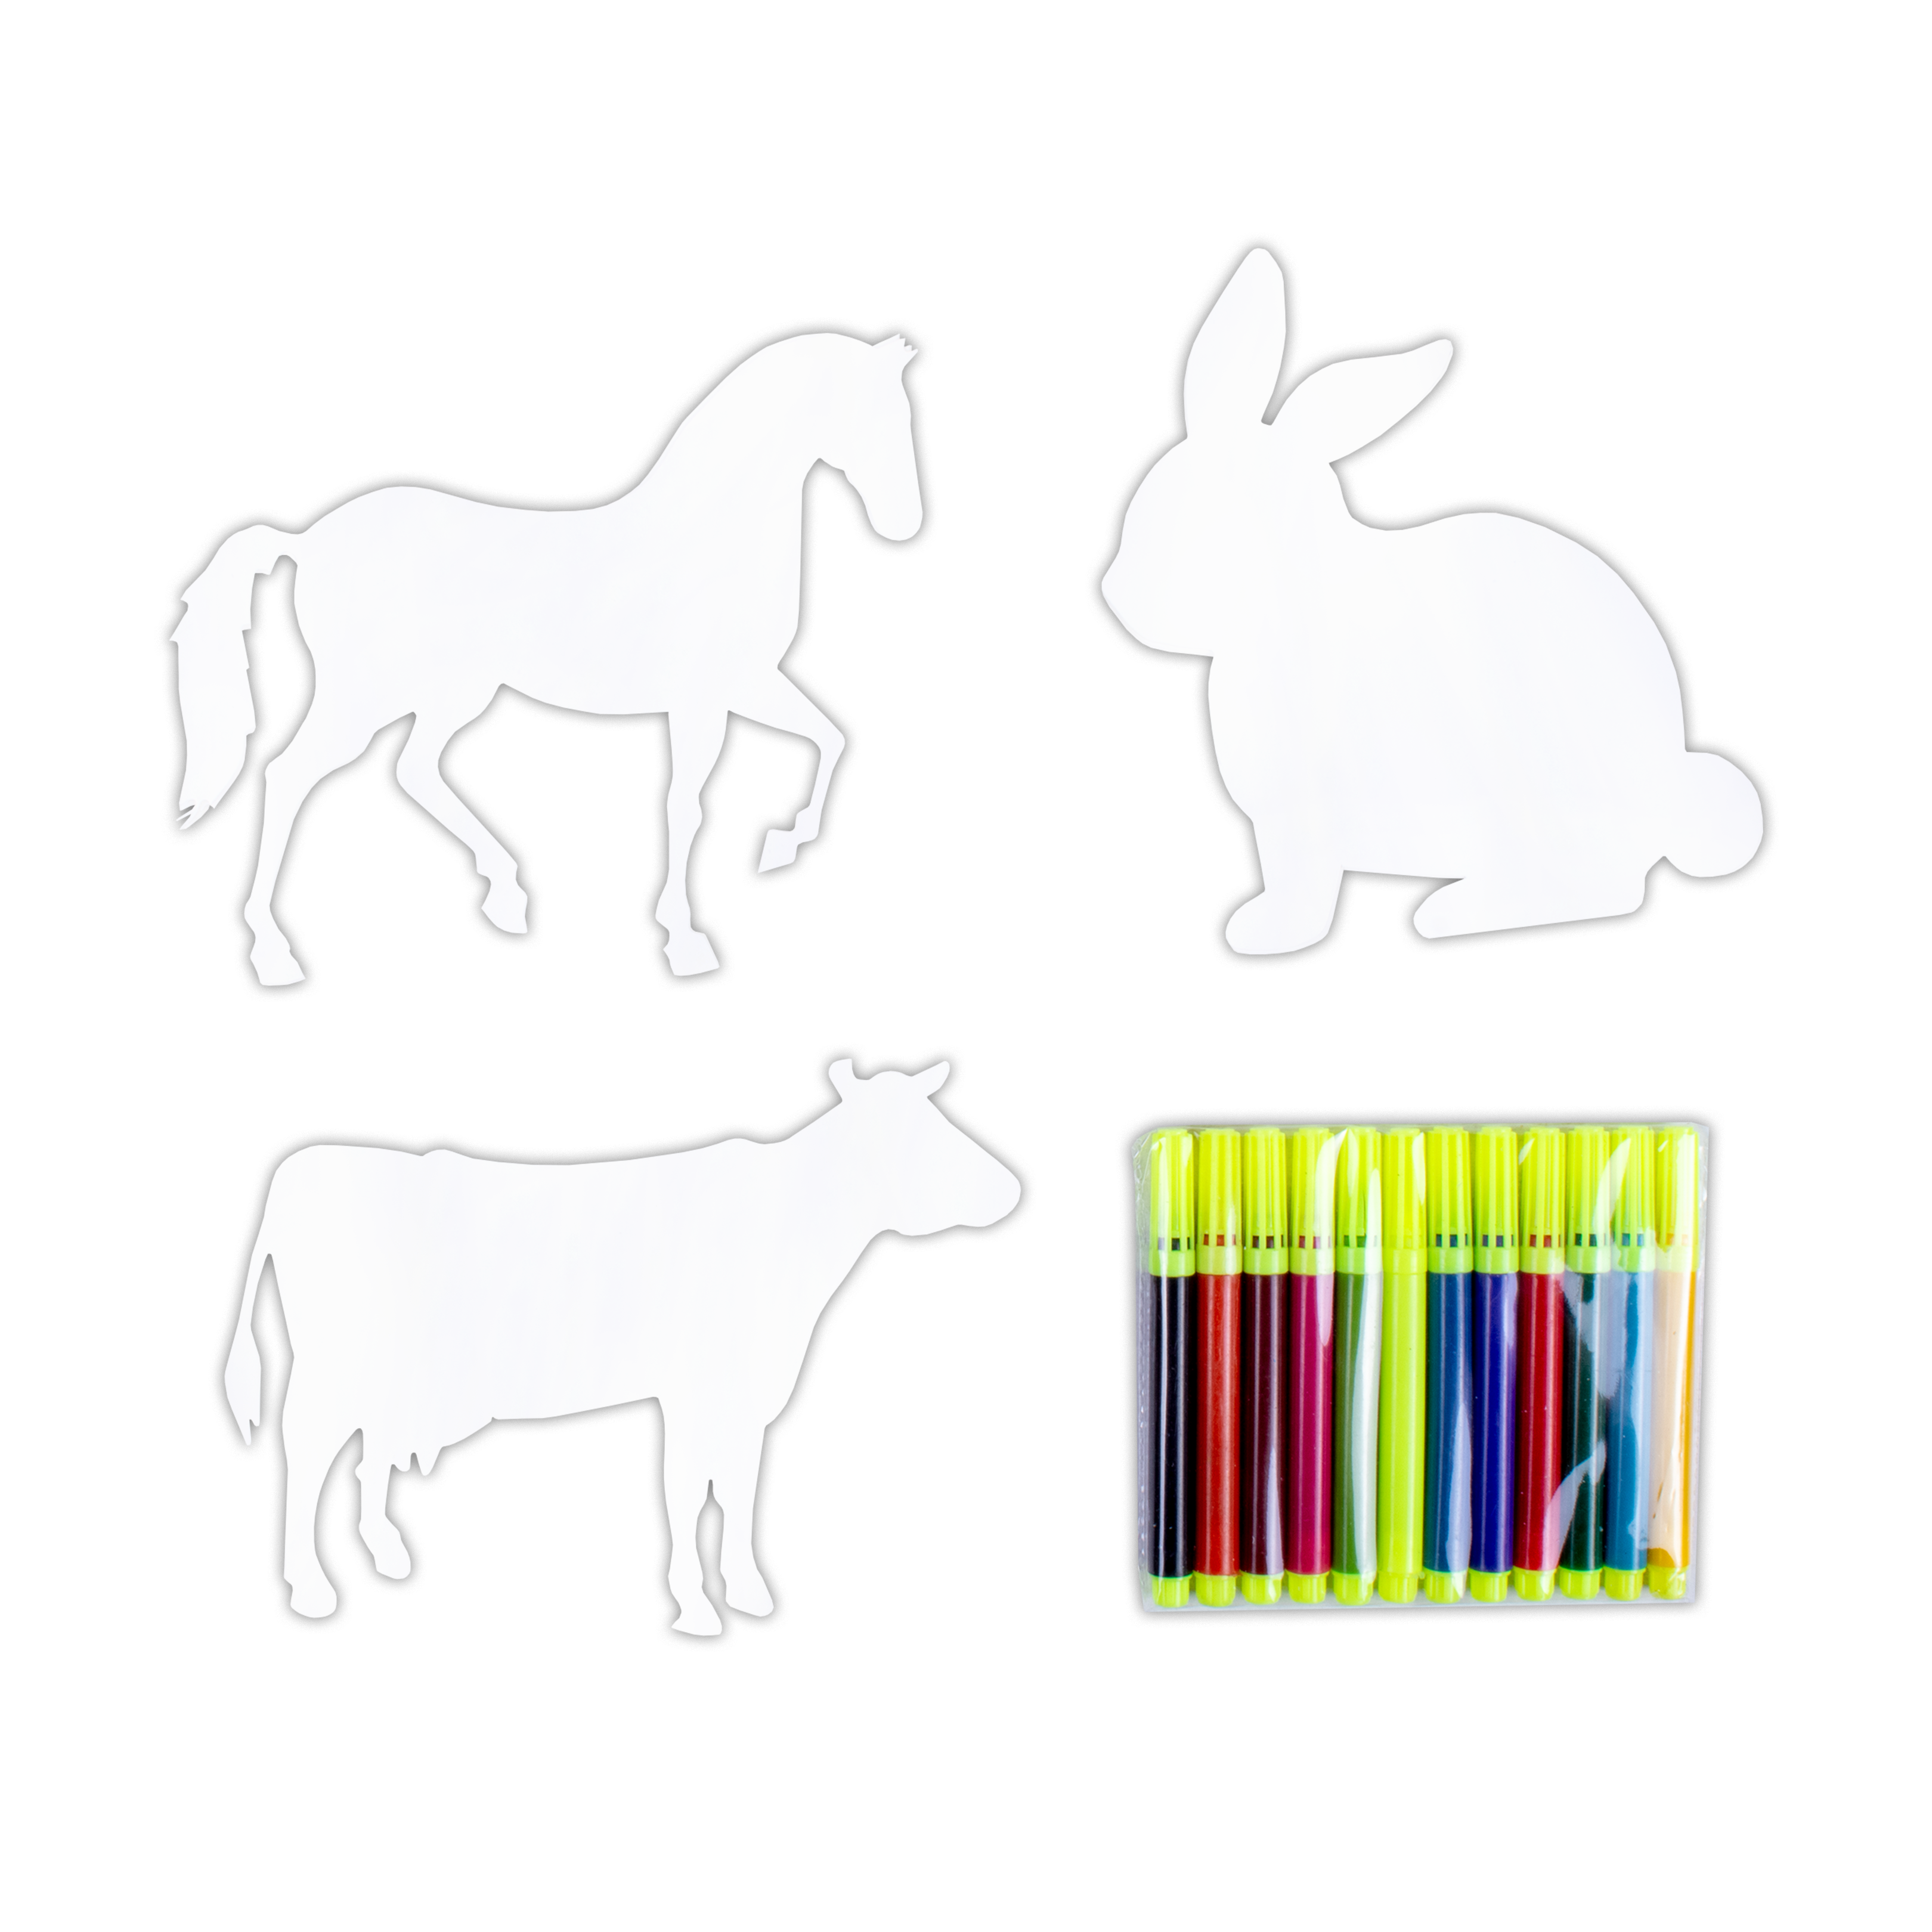 Colour Me Farm Animals Pre- Cut Shapes with 12 Colour Markers 10Pc Box